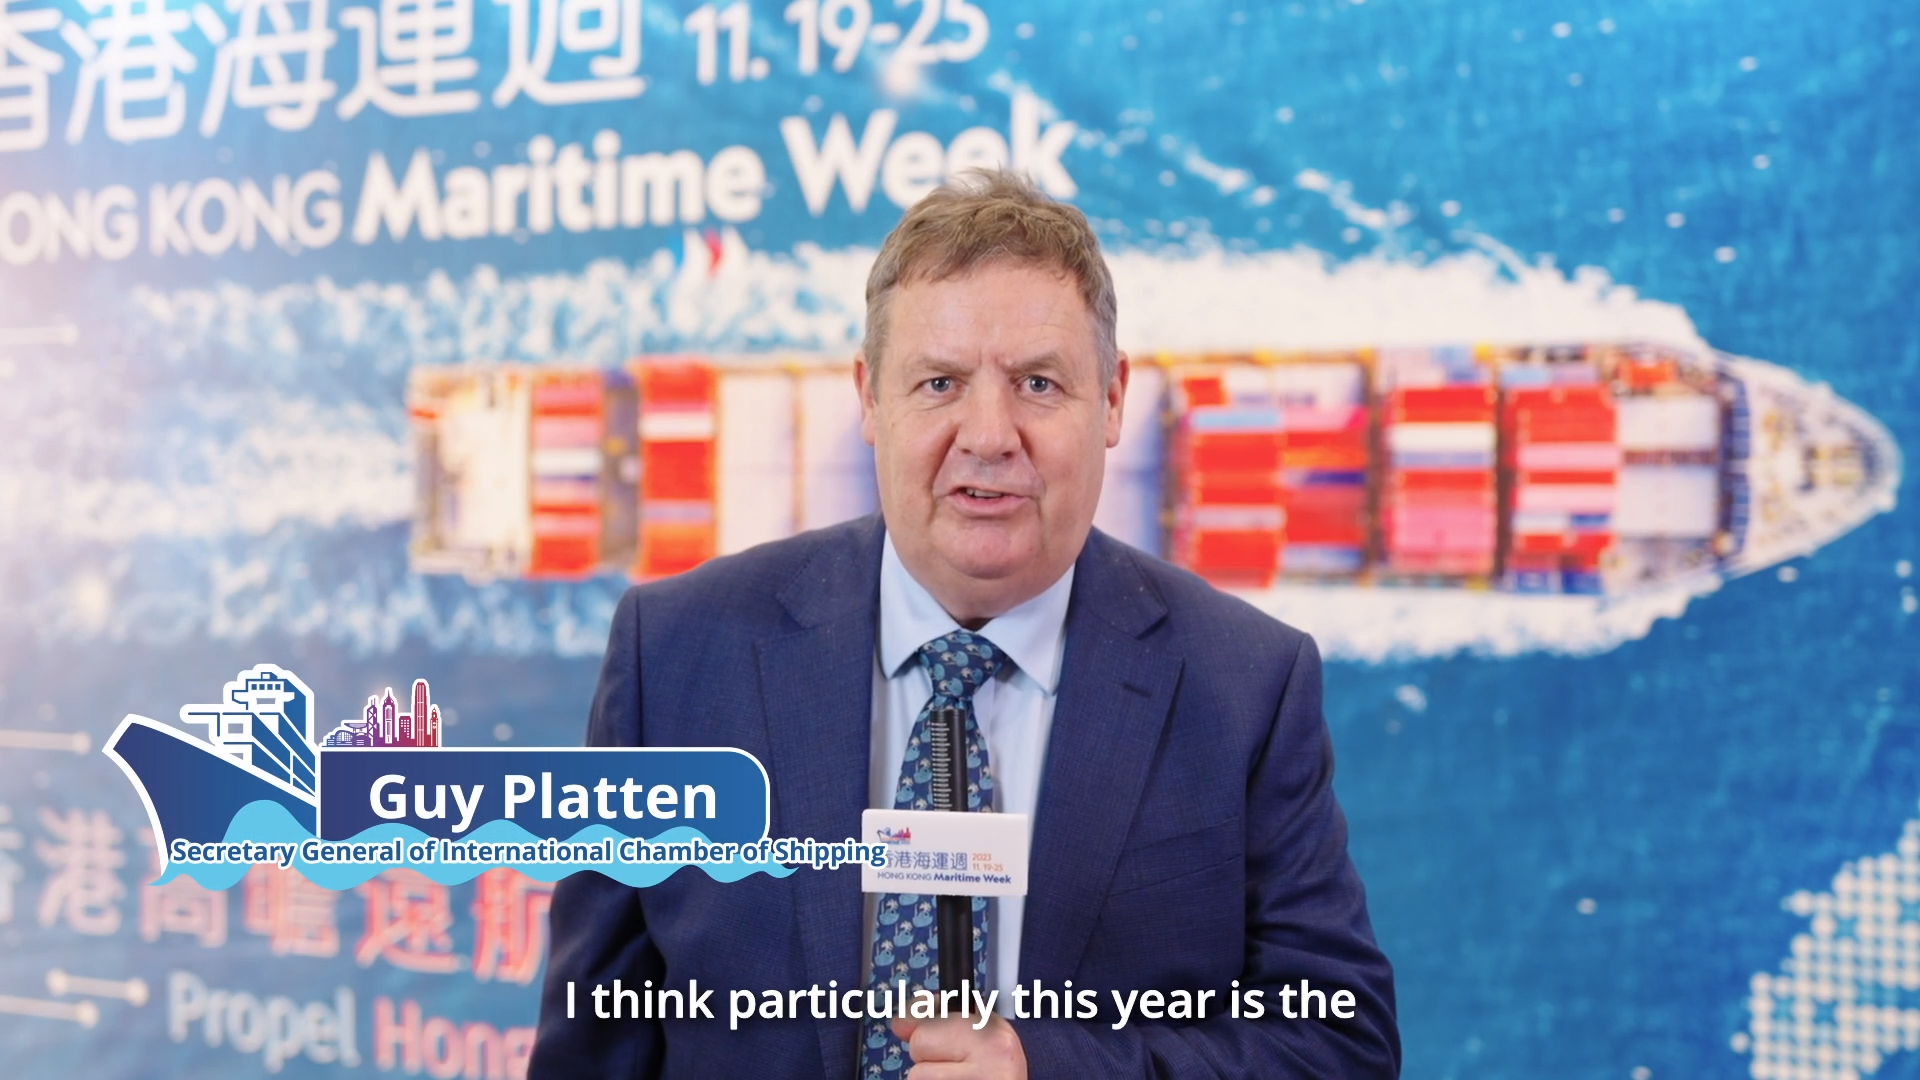 香港海運週2023 - 國際航運公會秘書長Guy Platten先生 (只有英文)